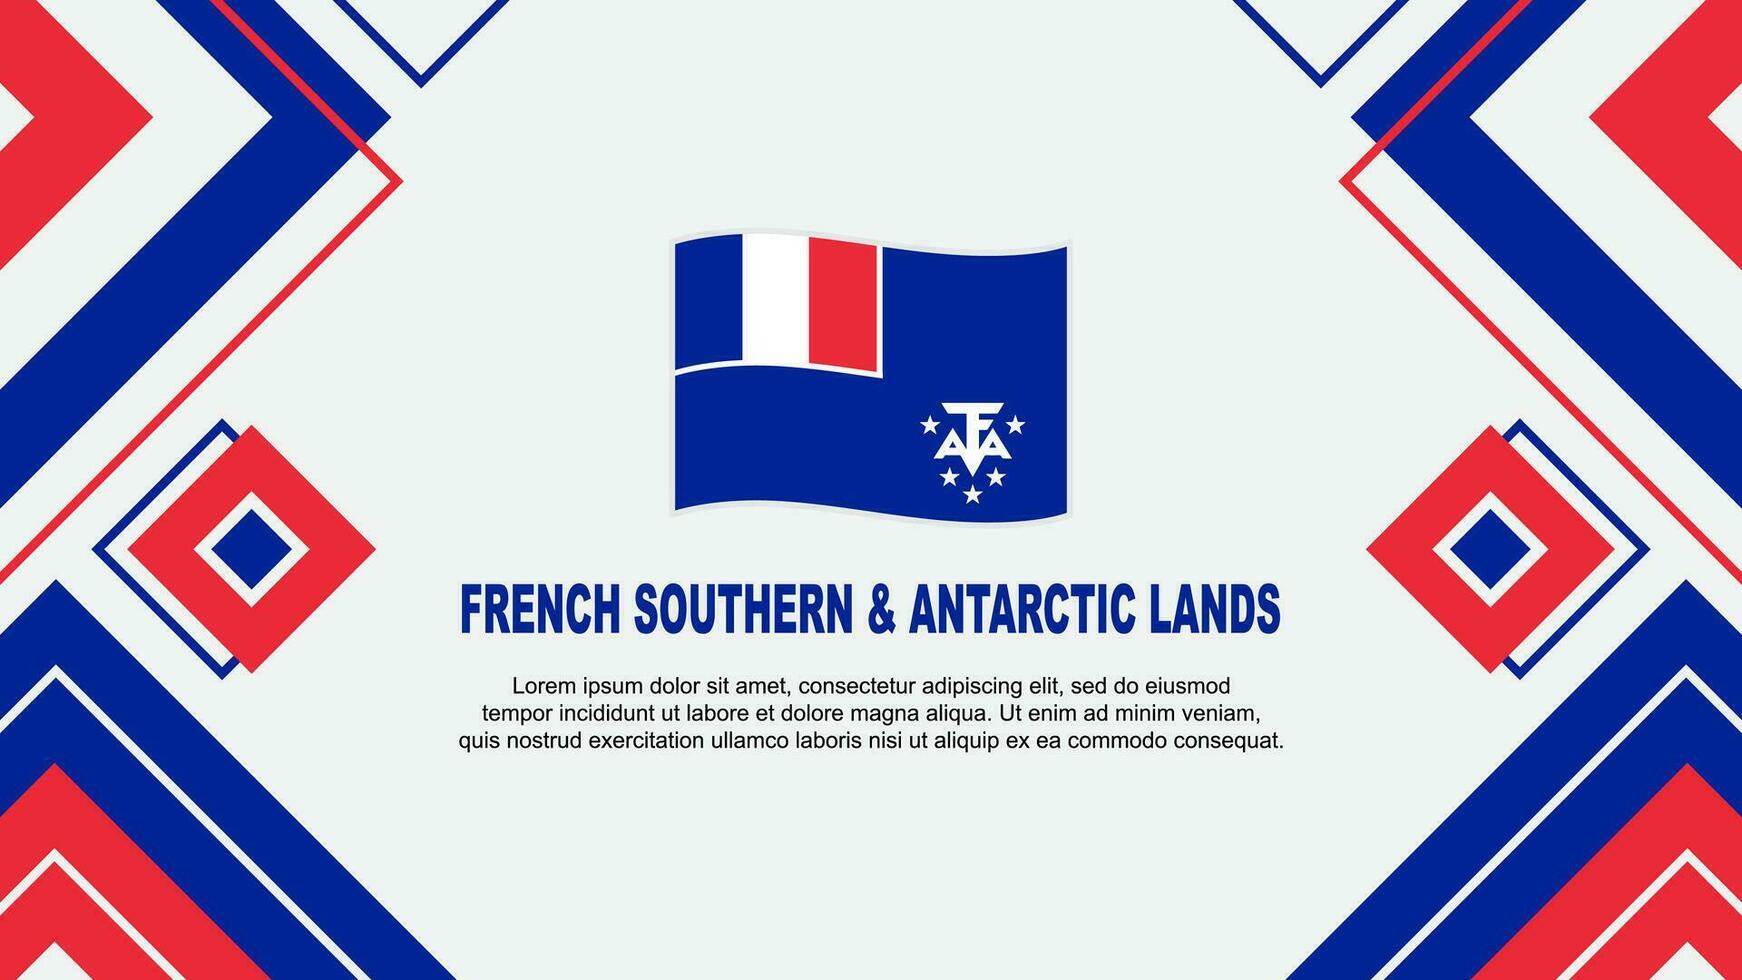 Frans zuidelijk en antarctisch landt vlag abstract achtergrond ontwerp sjabloon. onafhankelijkheid dag banier behang vector illustratie. achtergrond